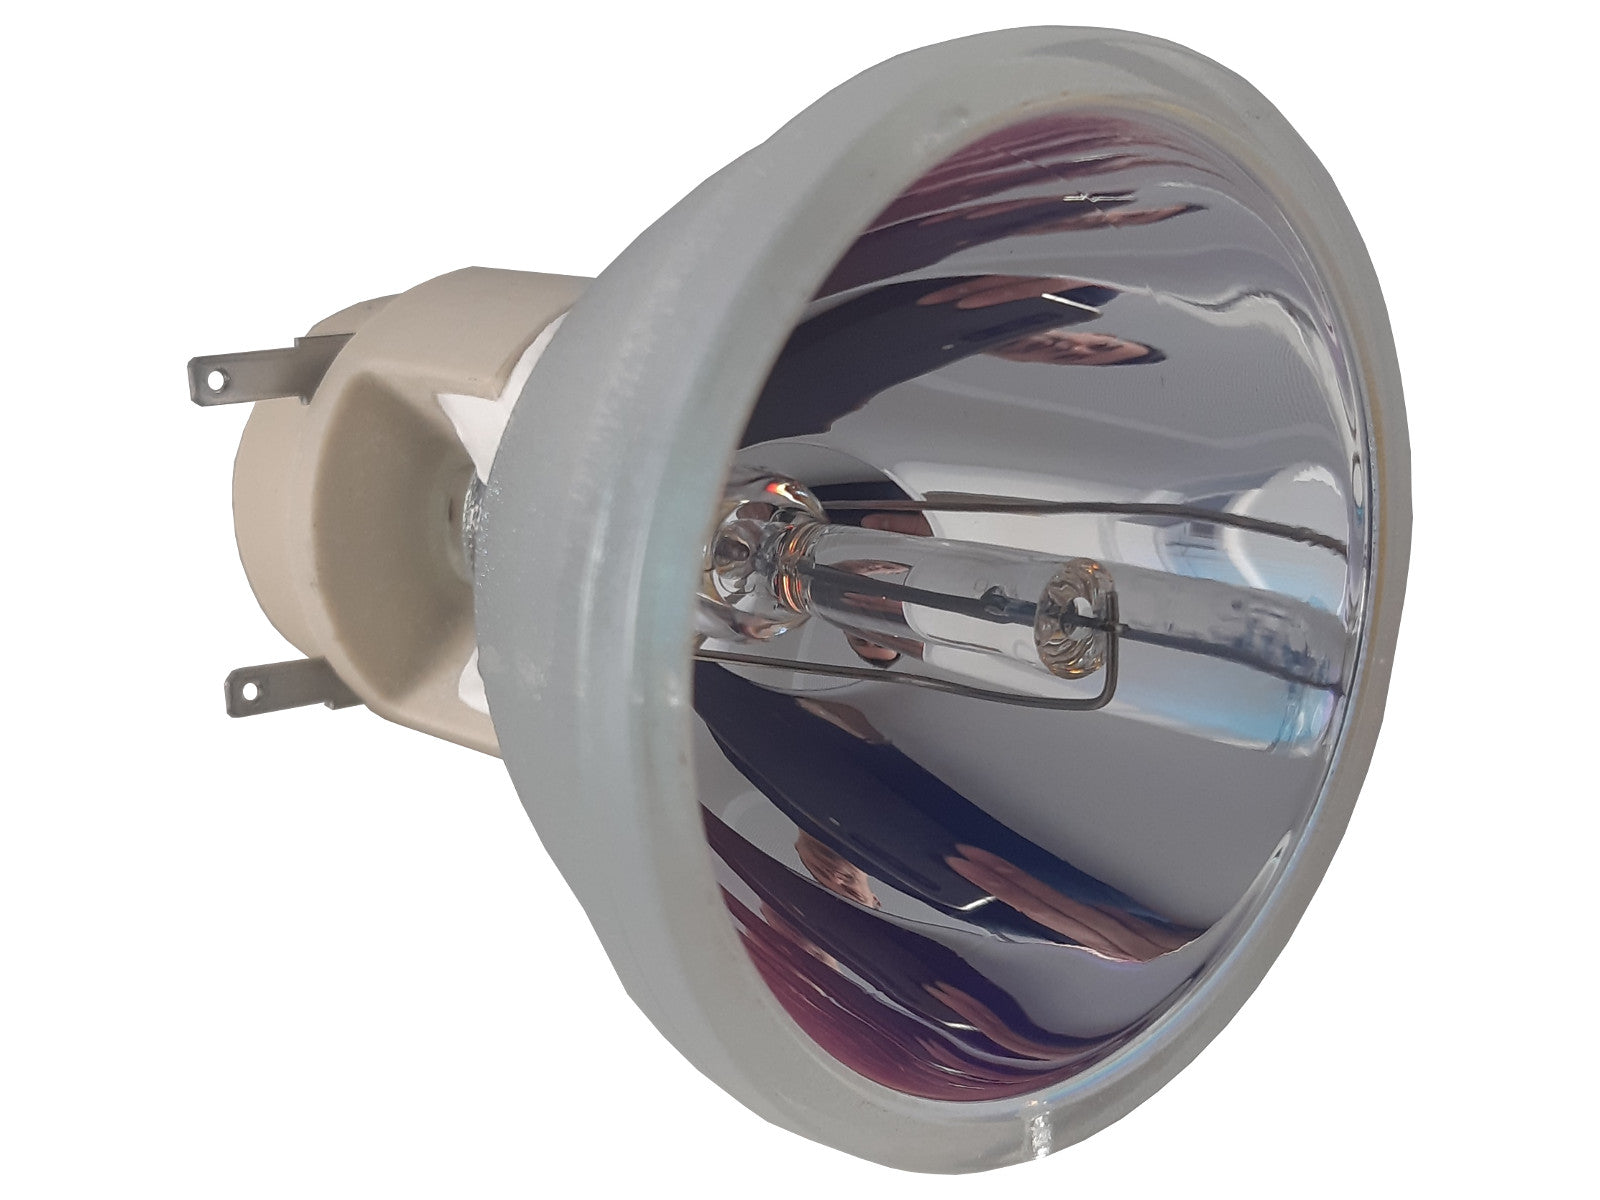 OSRAM Ersatzlampe P-VIP 240/0.8 E30.1 | Beamerlampe für diverse Projektoren - Bild 1